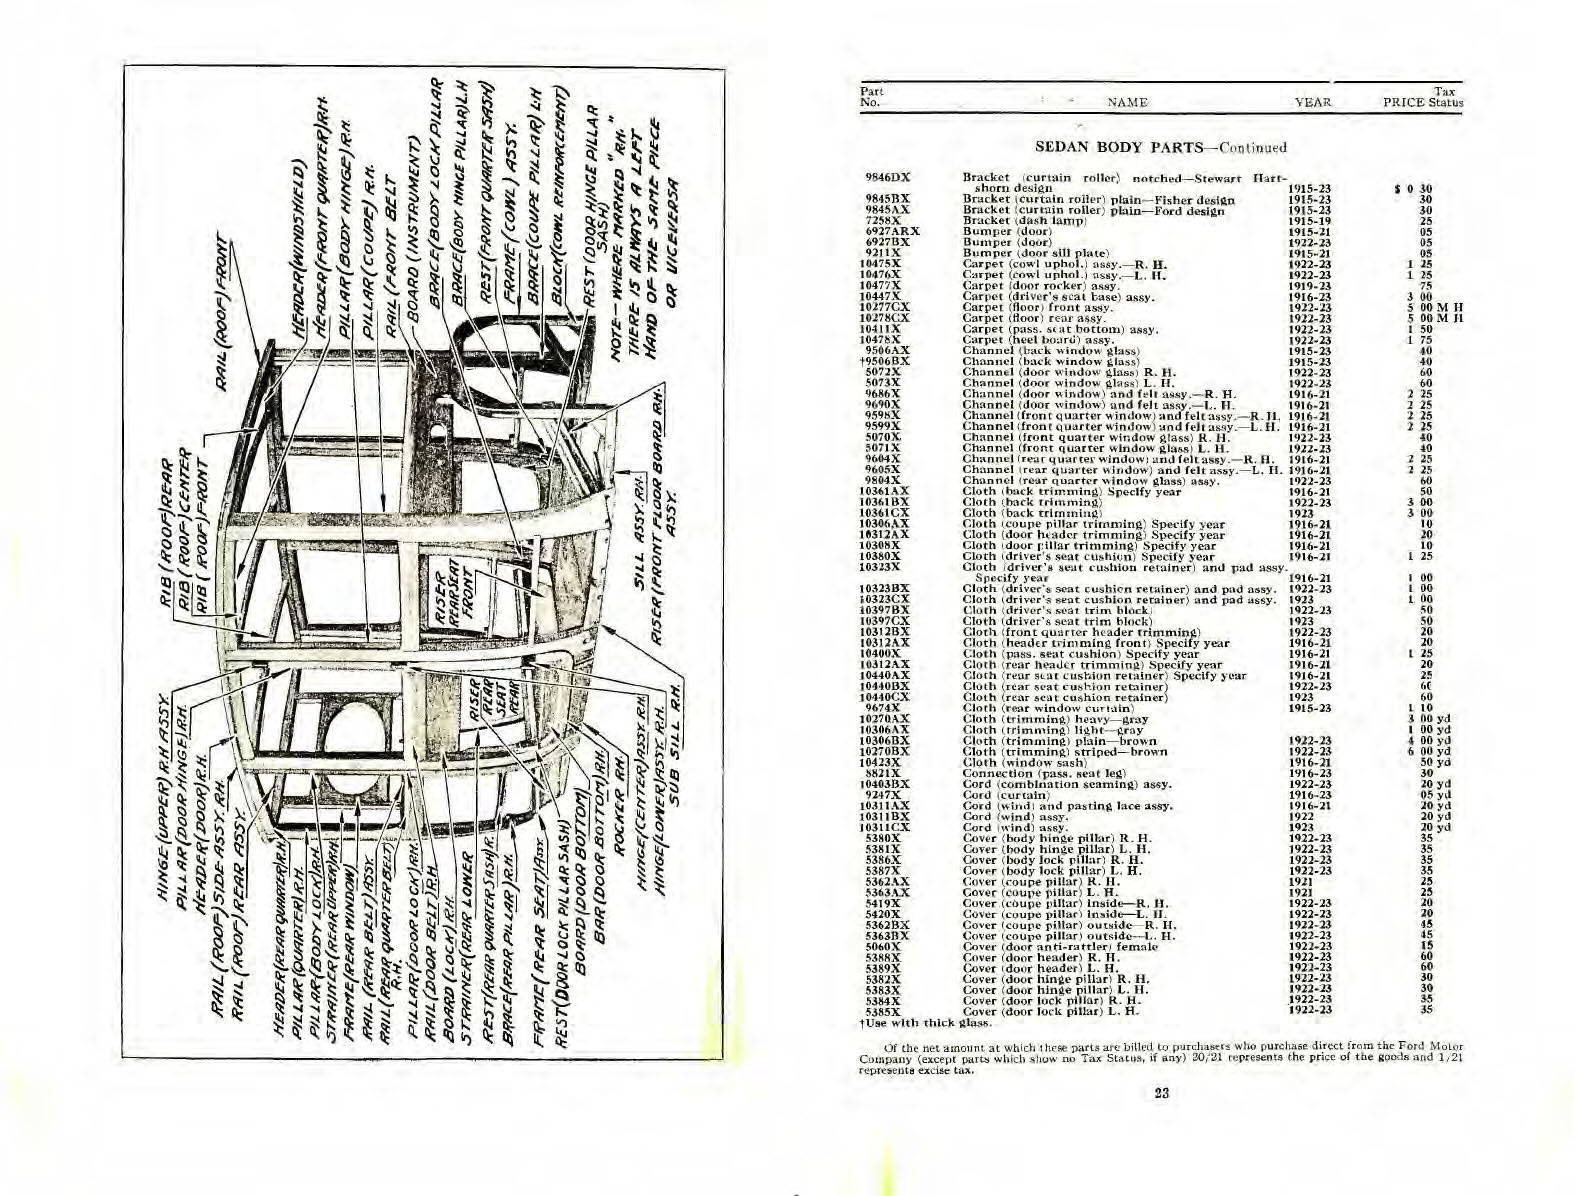 n_1923 Ford Body Parts List-22-23.jpg